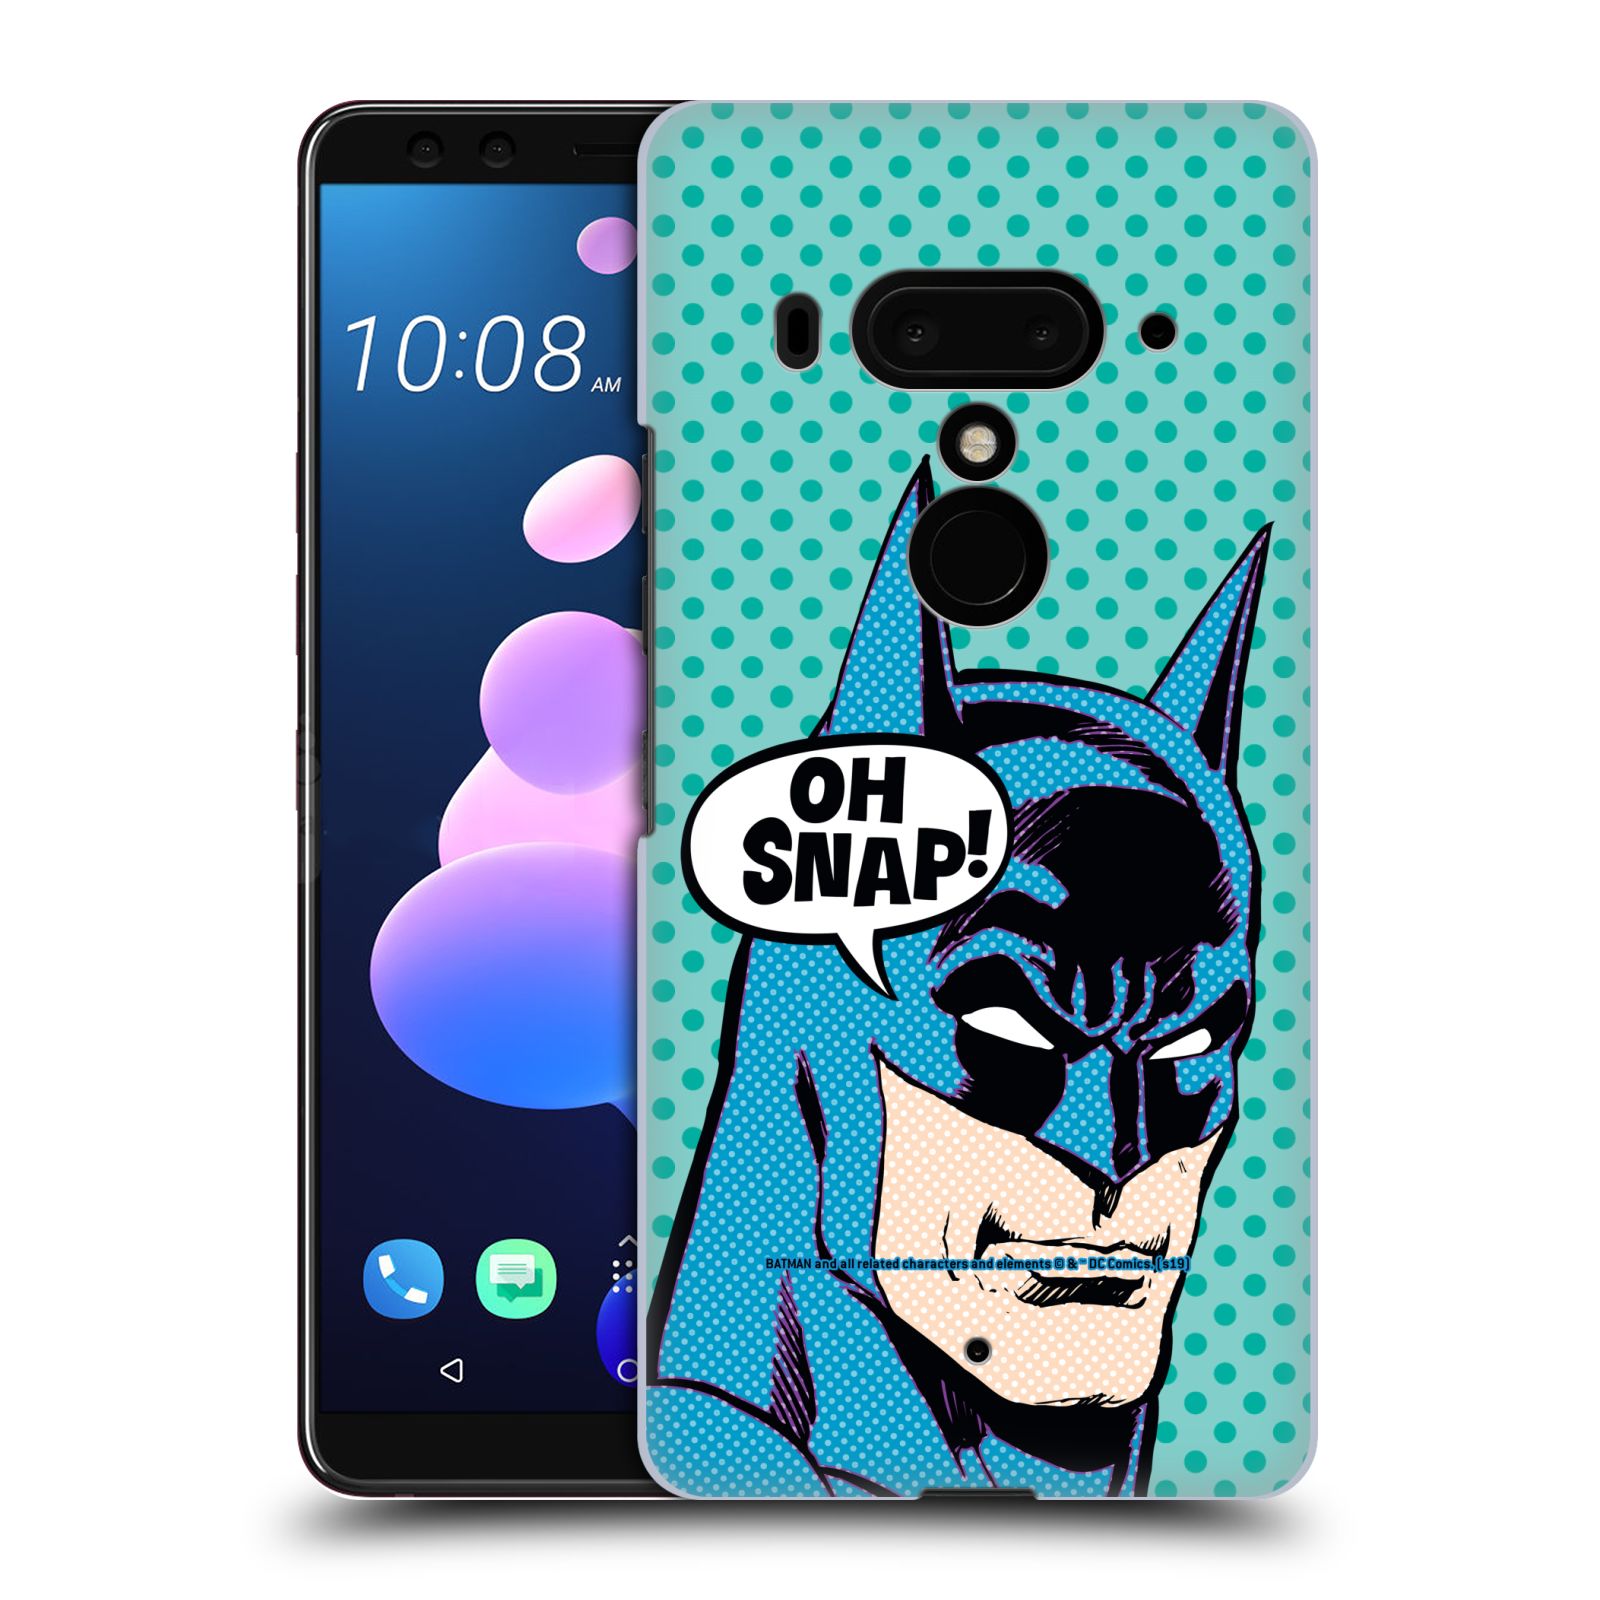 Pouzdro na mobil HTC U 12 PLUS / U 12+ DUAL SIM - HEAD CASE - DC komix Batman Pop Art tvář